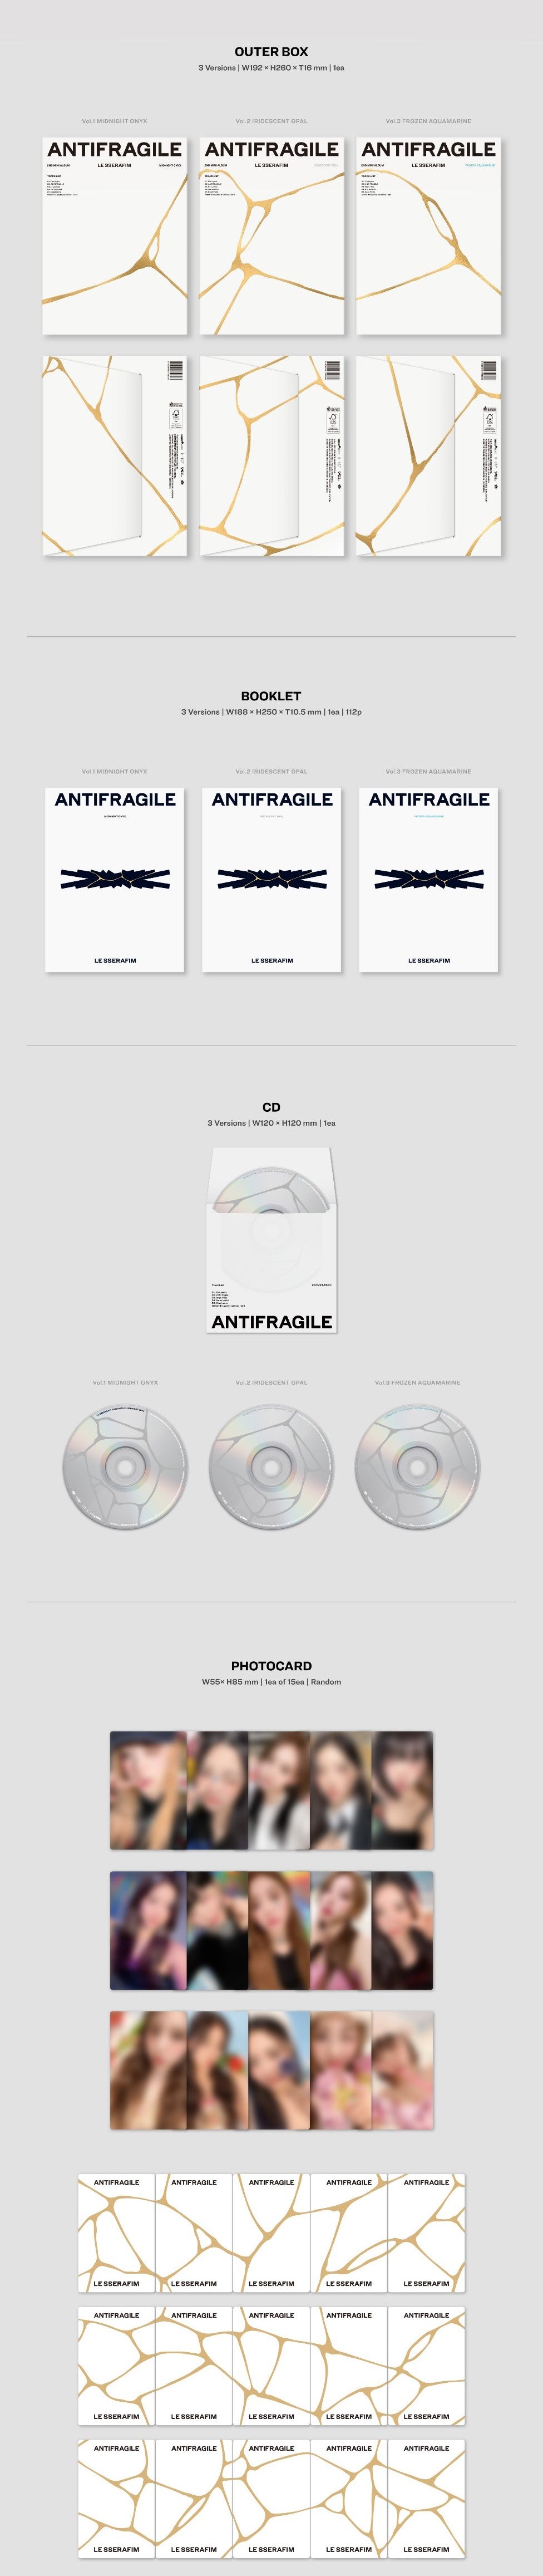 K-Pop CD Le Sserafim - 2nd Mini Album 'Antifragile'